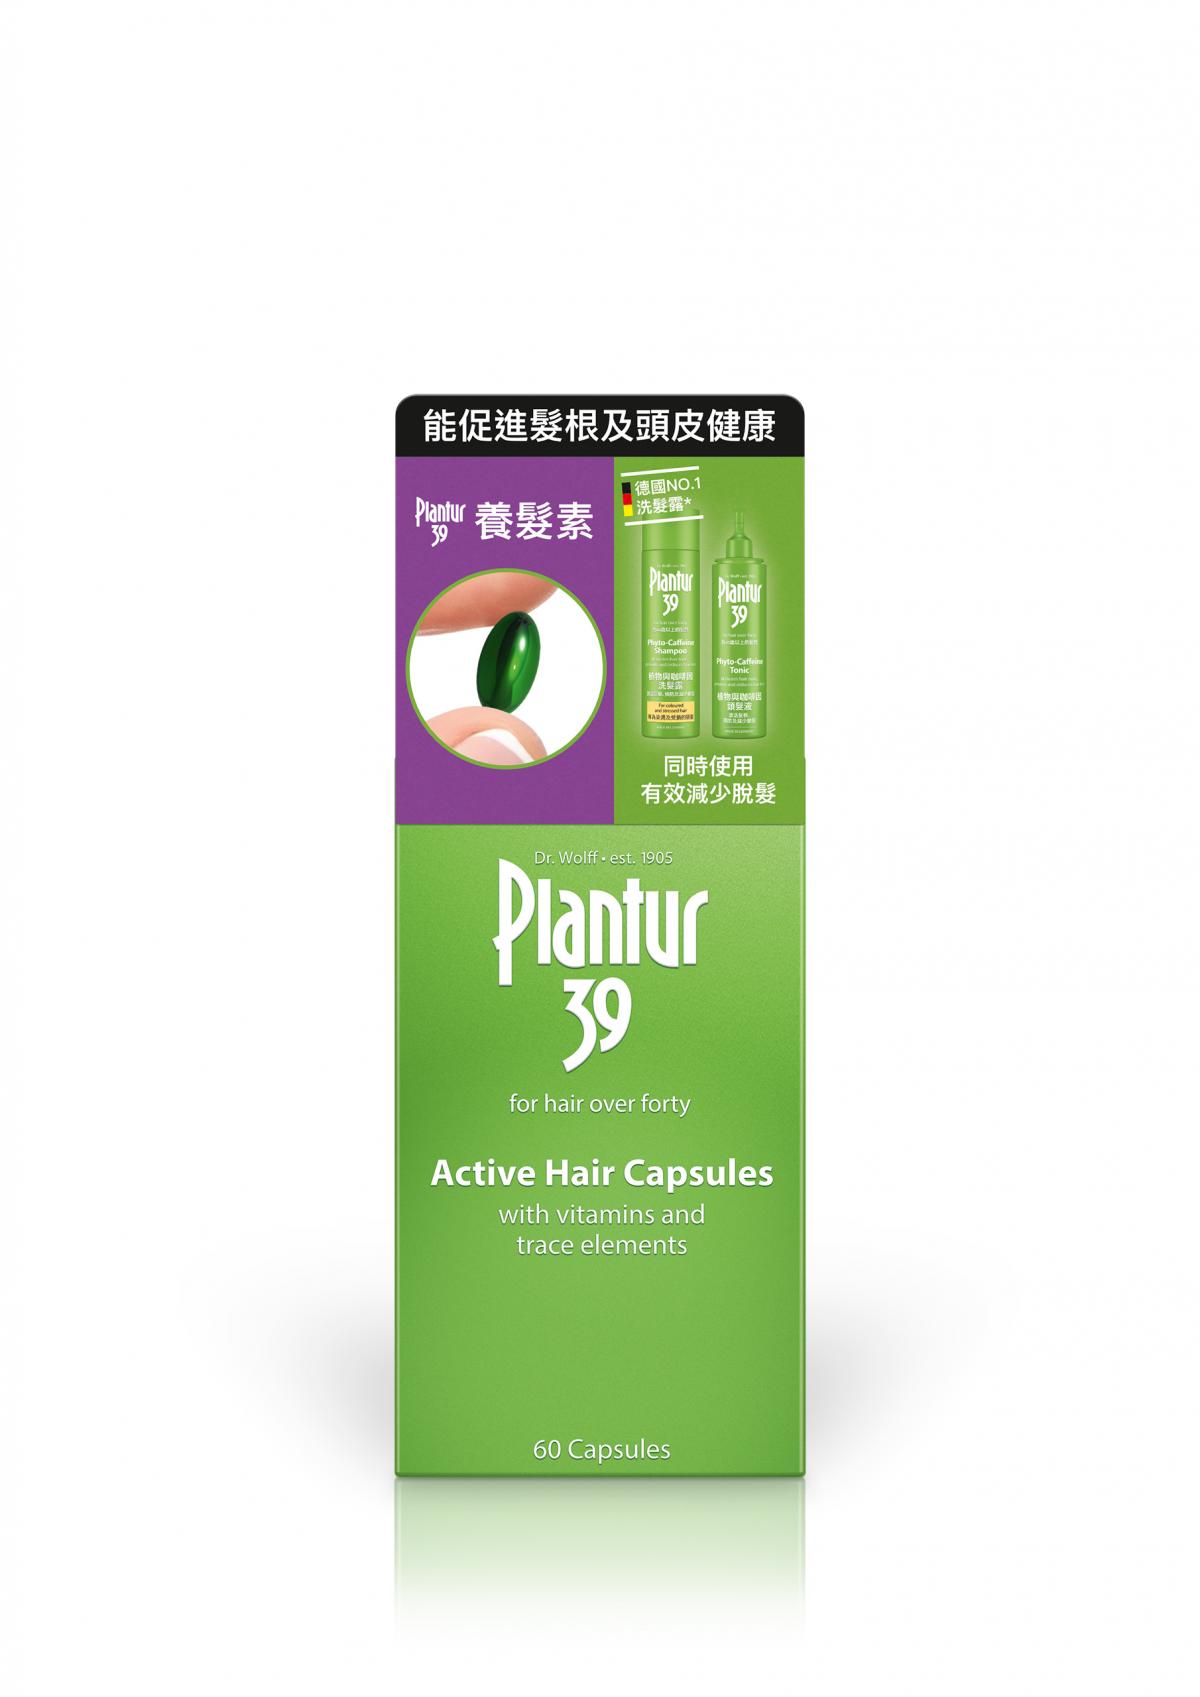 養髮素 60粒 - 促進髮根及頭皮健康